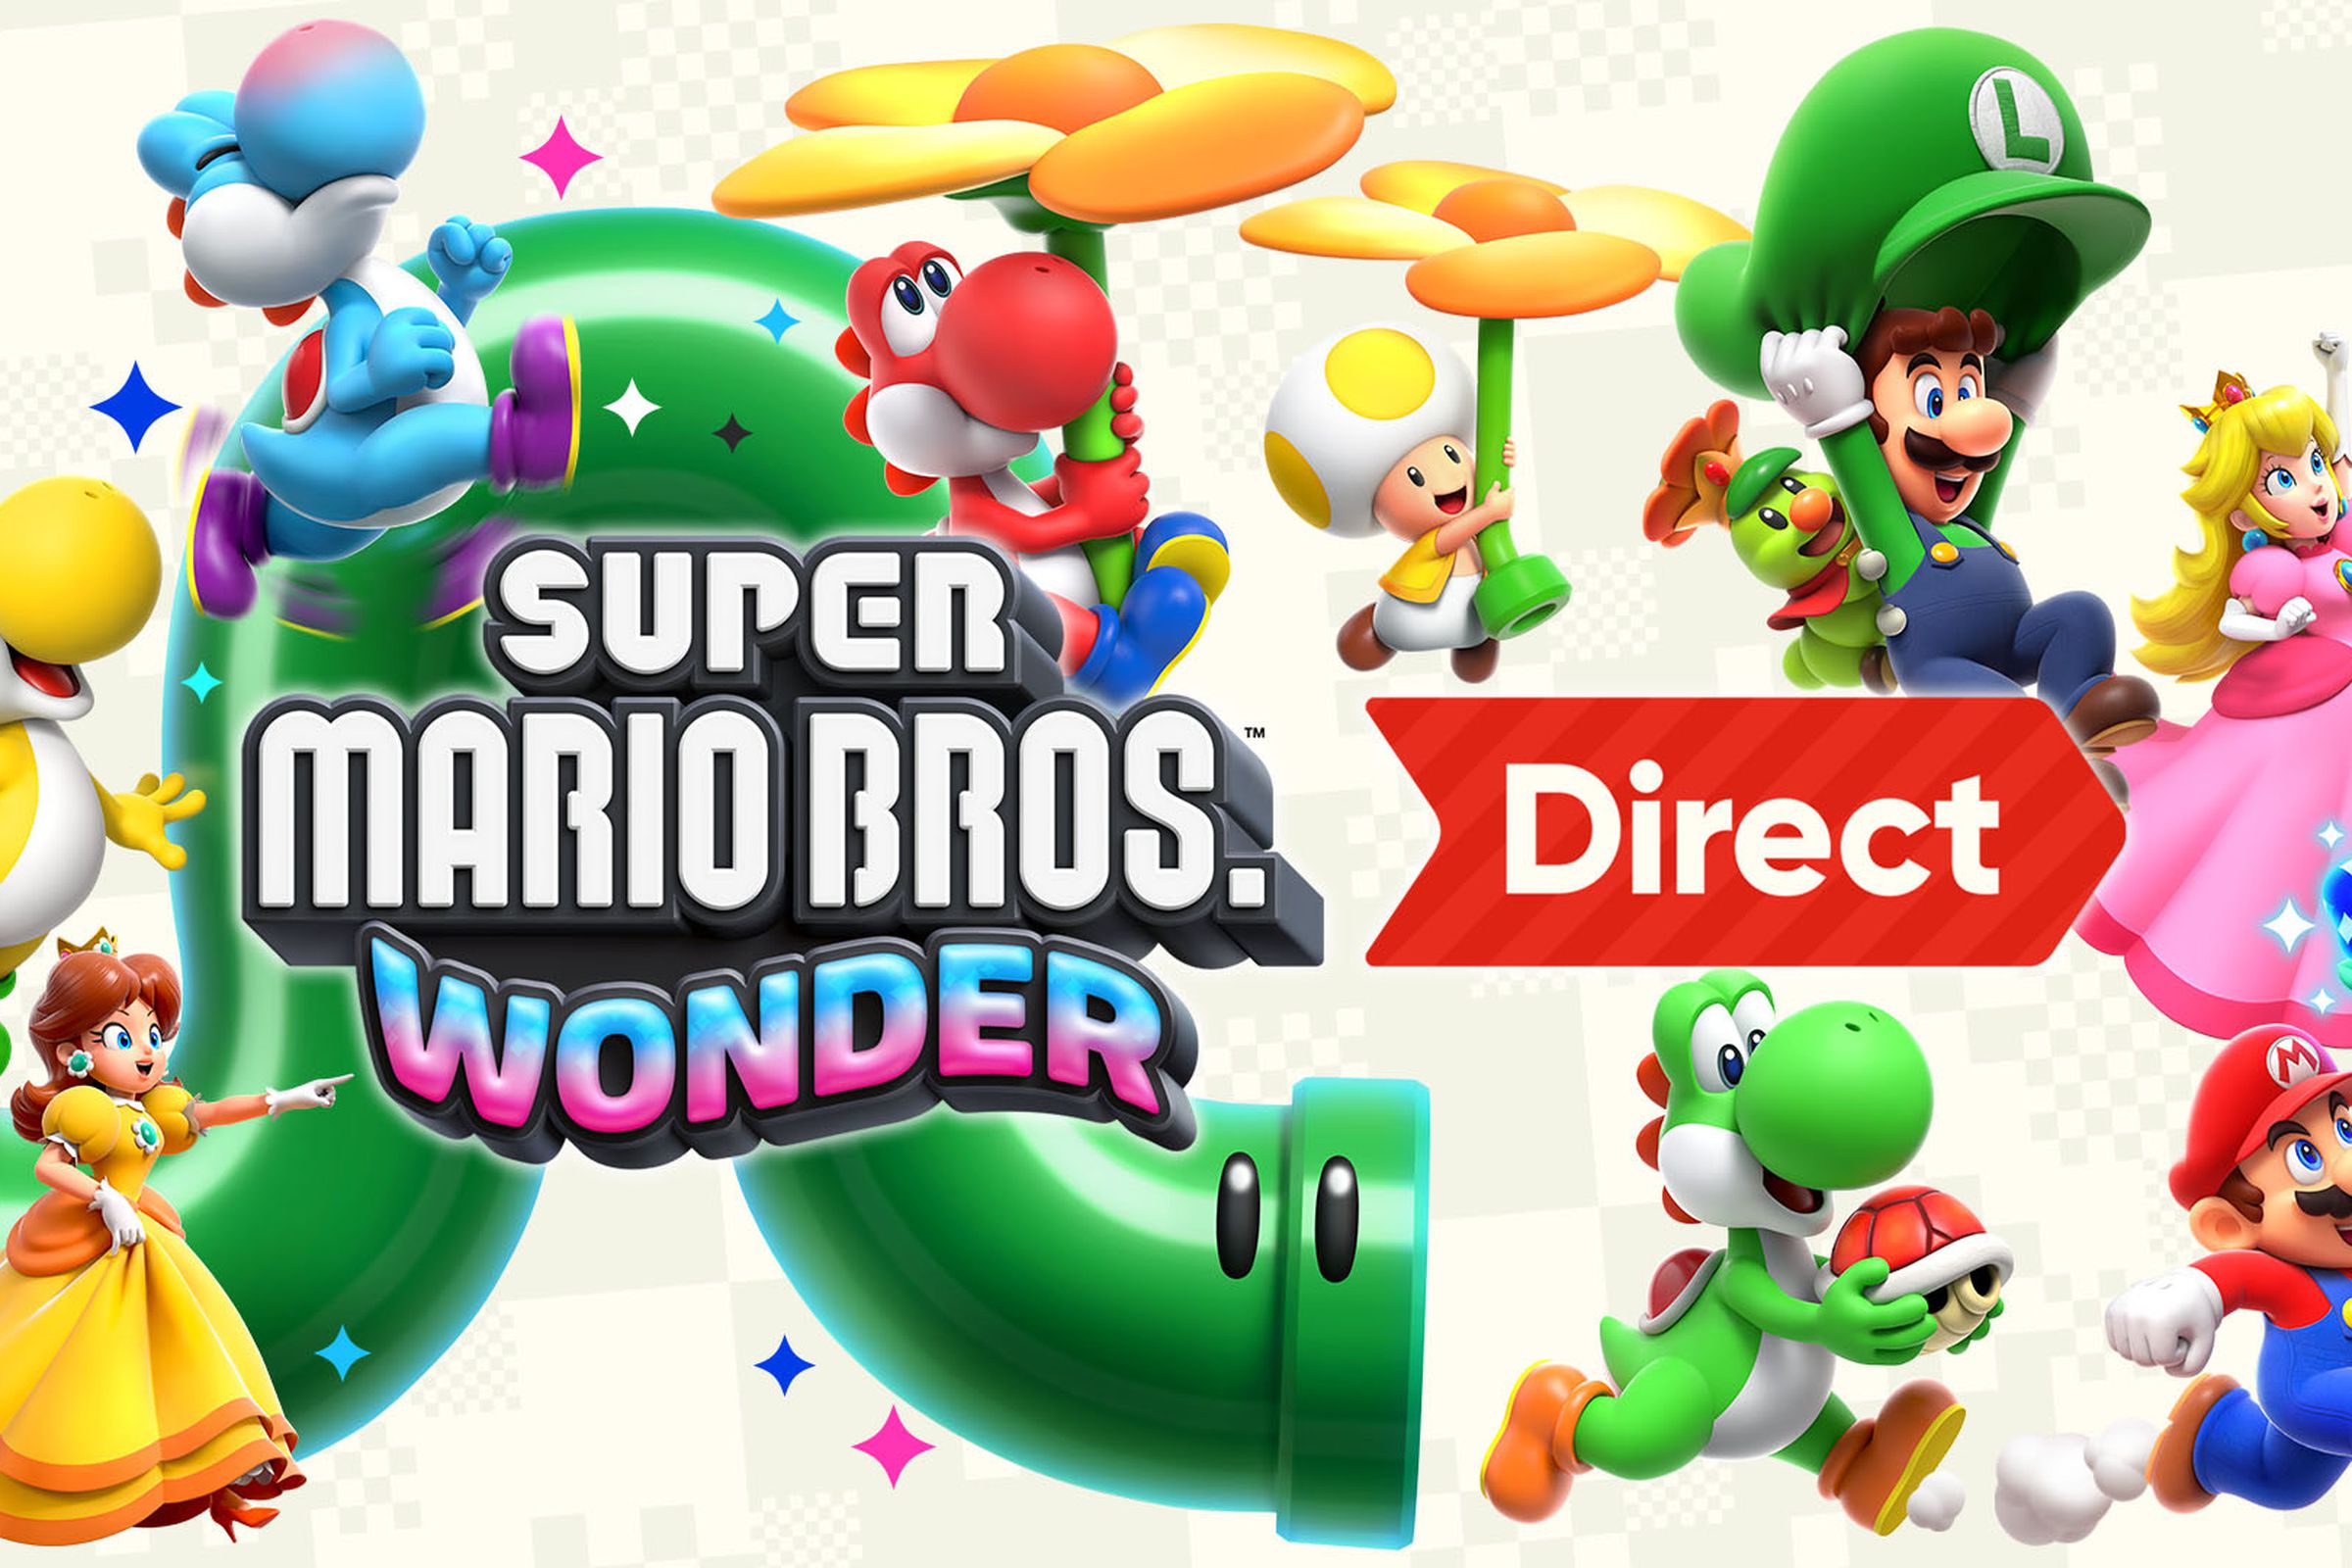 Nintendo Direct: Super Mario Bros. Wonder promo picture